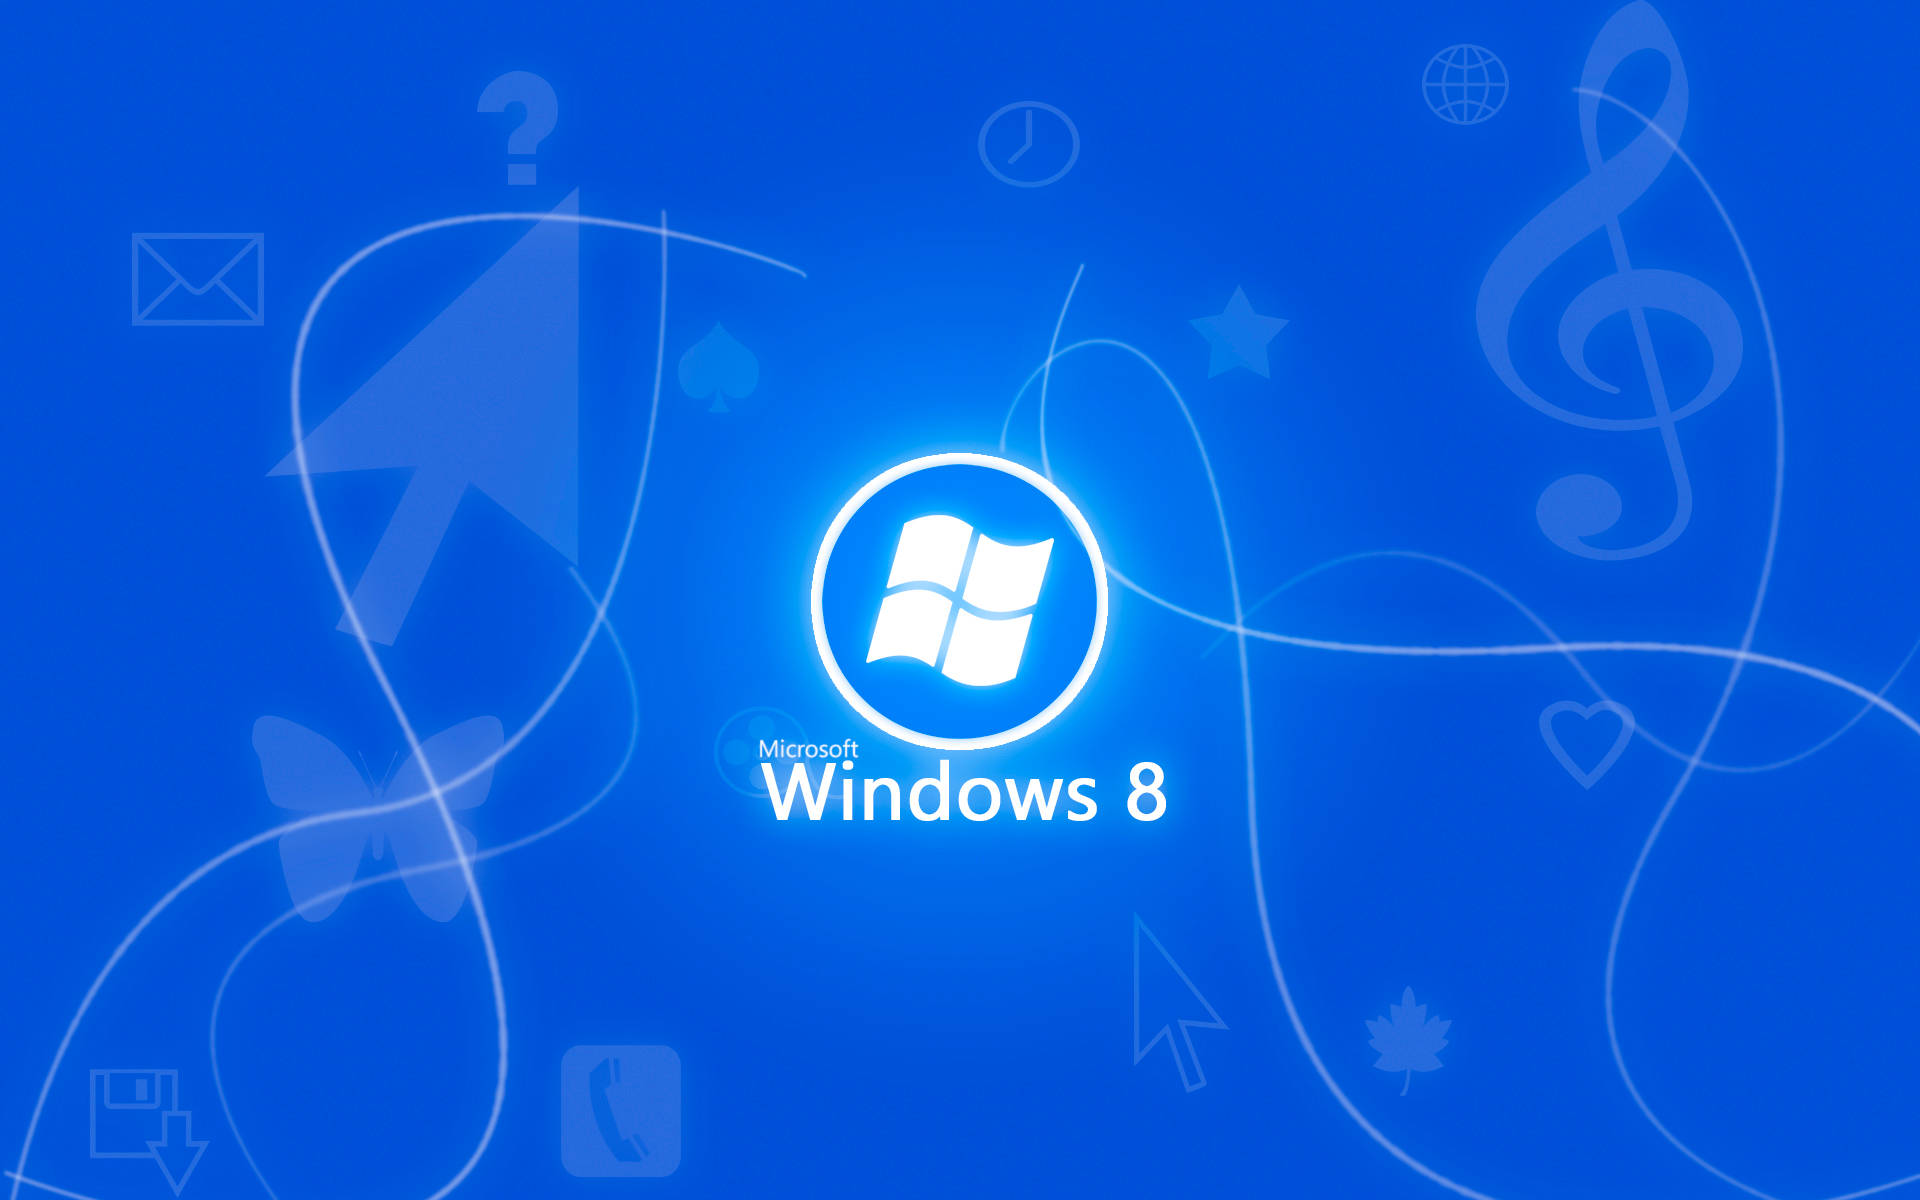 Neonwindows 8-logo In Blau Wallpaper